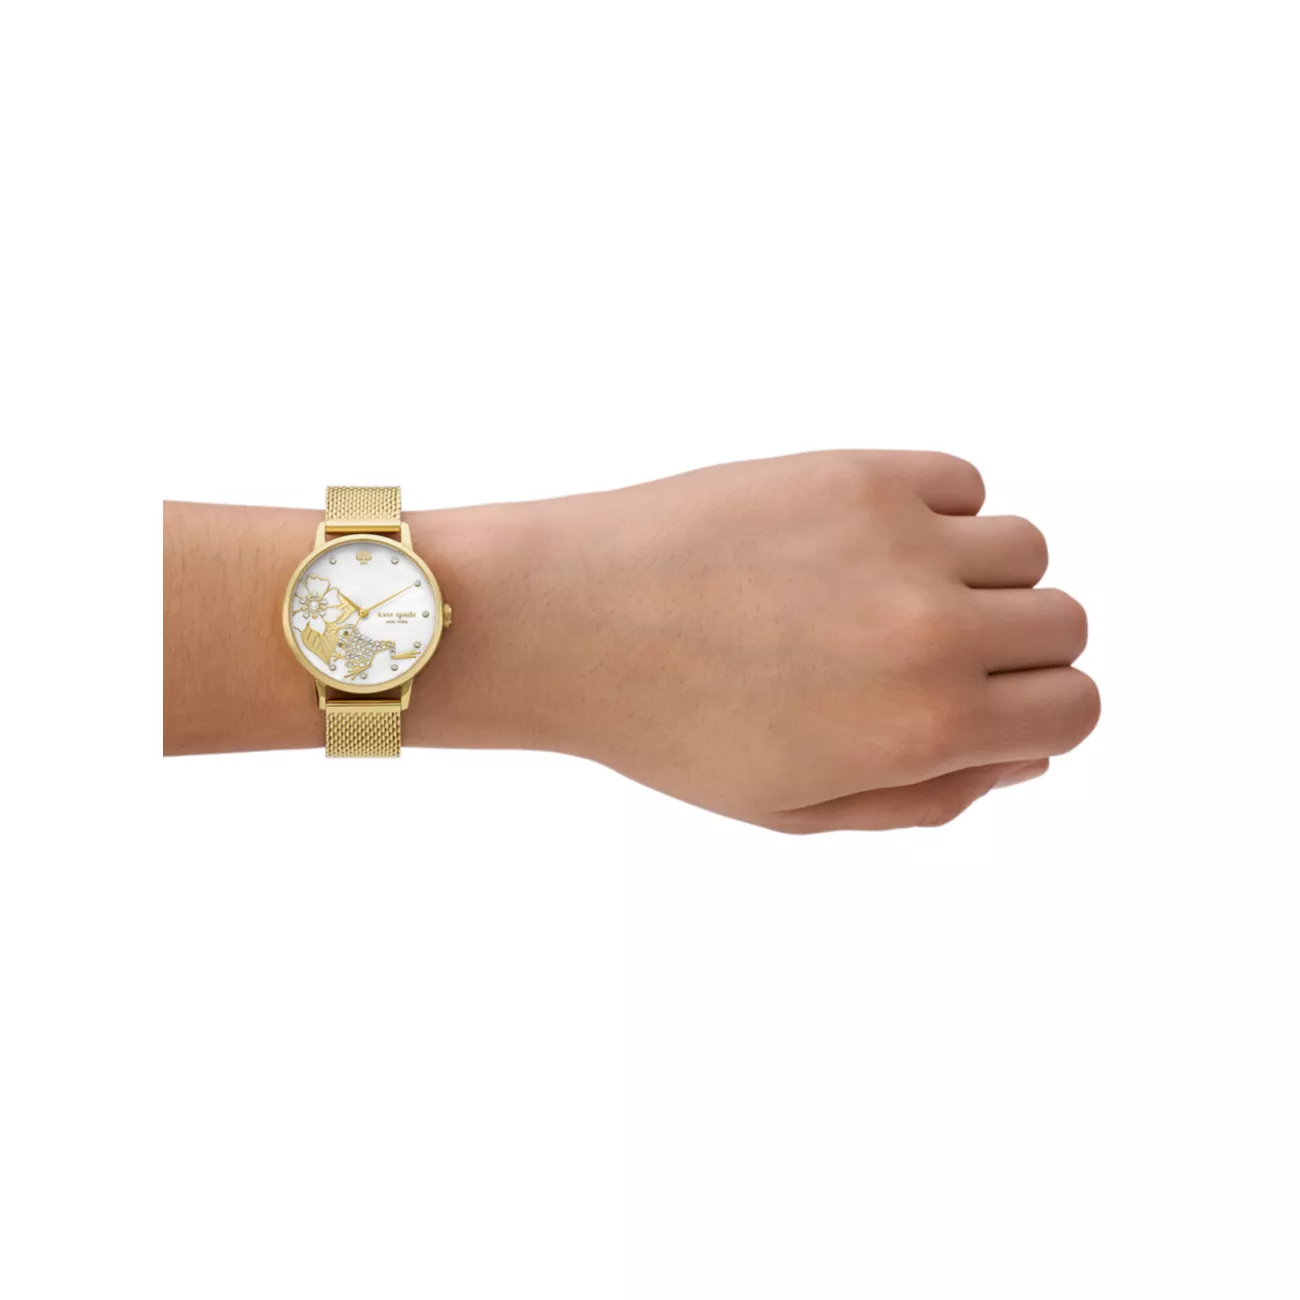 Часы-браслет Metro Goldtone с сетчатым браслетом Kate Spade New York